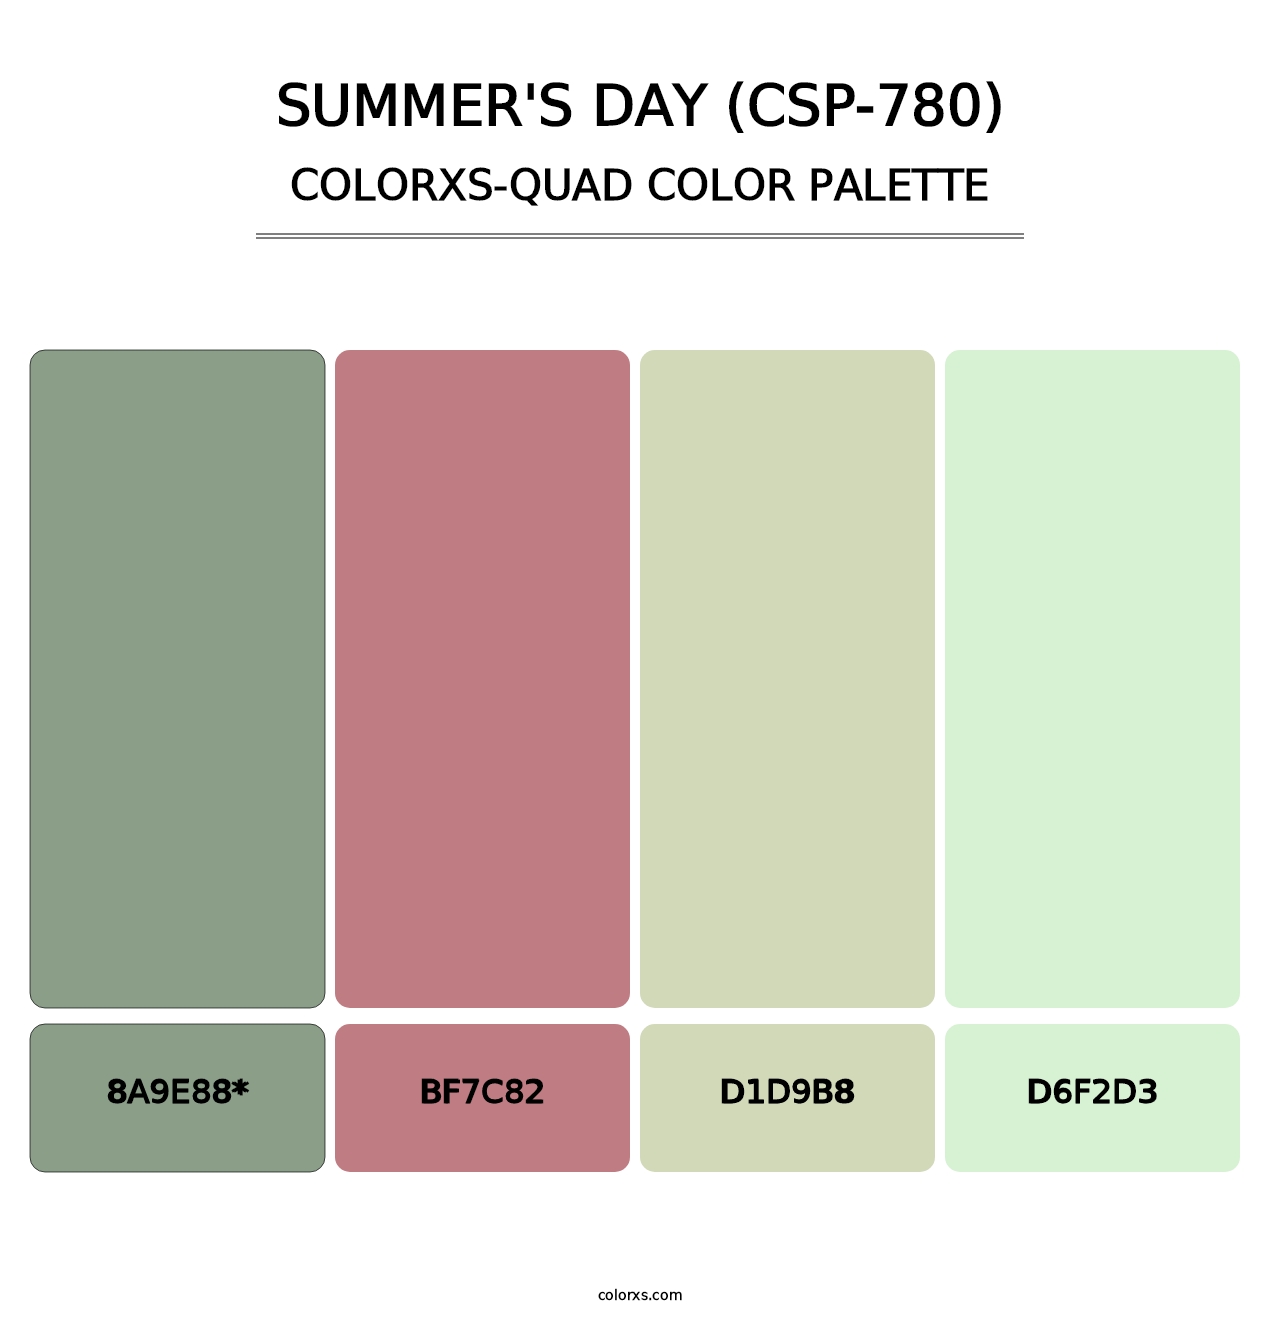 Summer's Day (CSP-780) - Colorxs Quad Palette